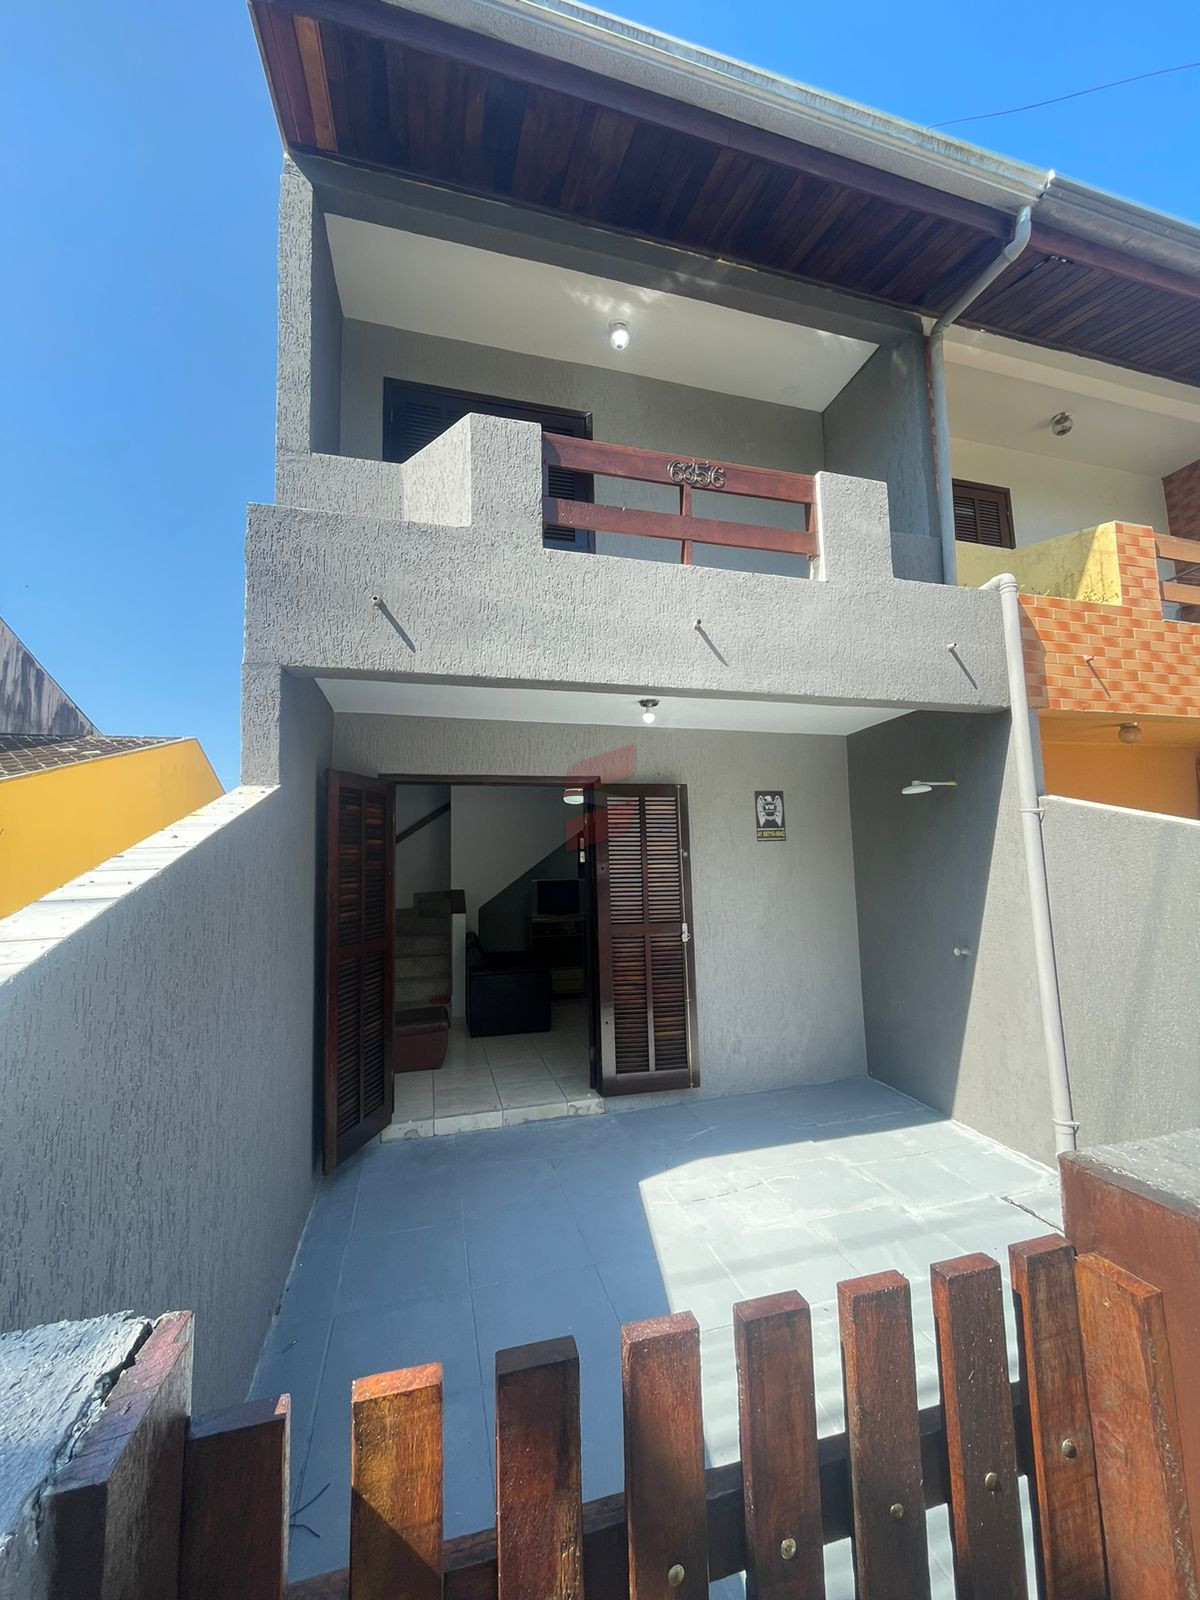 SOBRADO com 2 dormitórios à venda com 202.8m² por R$ 368.000,00 no bairro Balneário Betaras - MATINHOS / PR